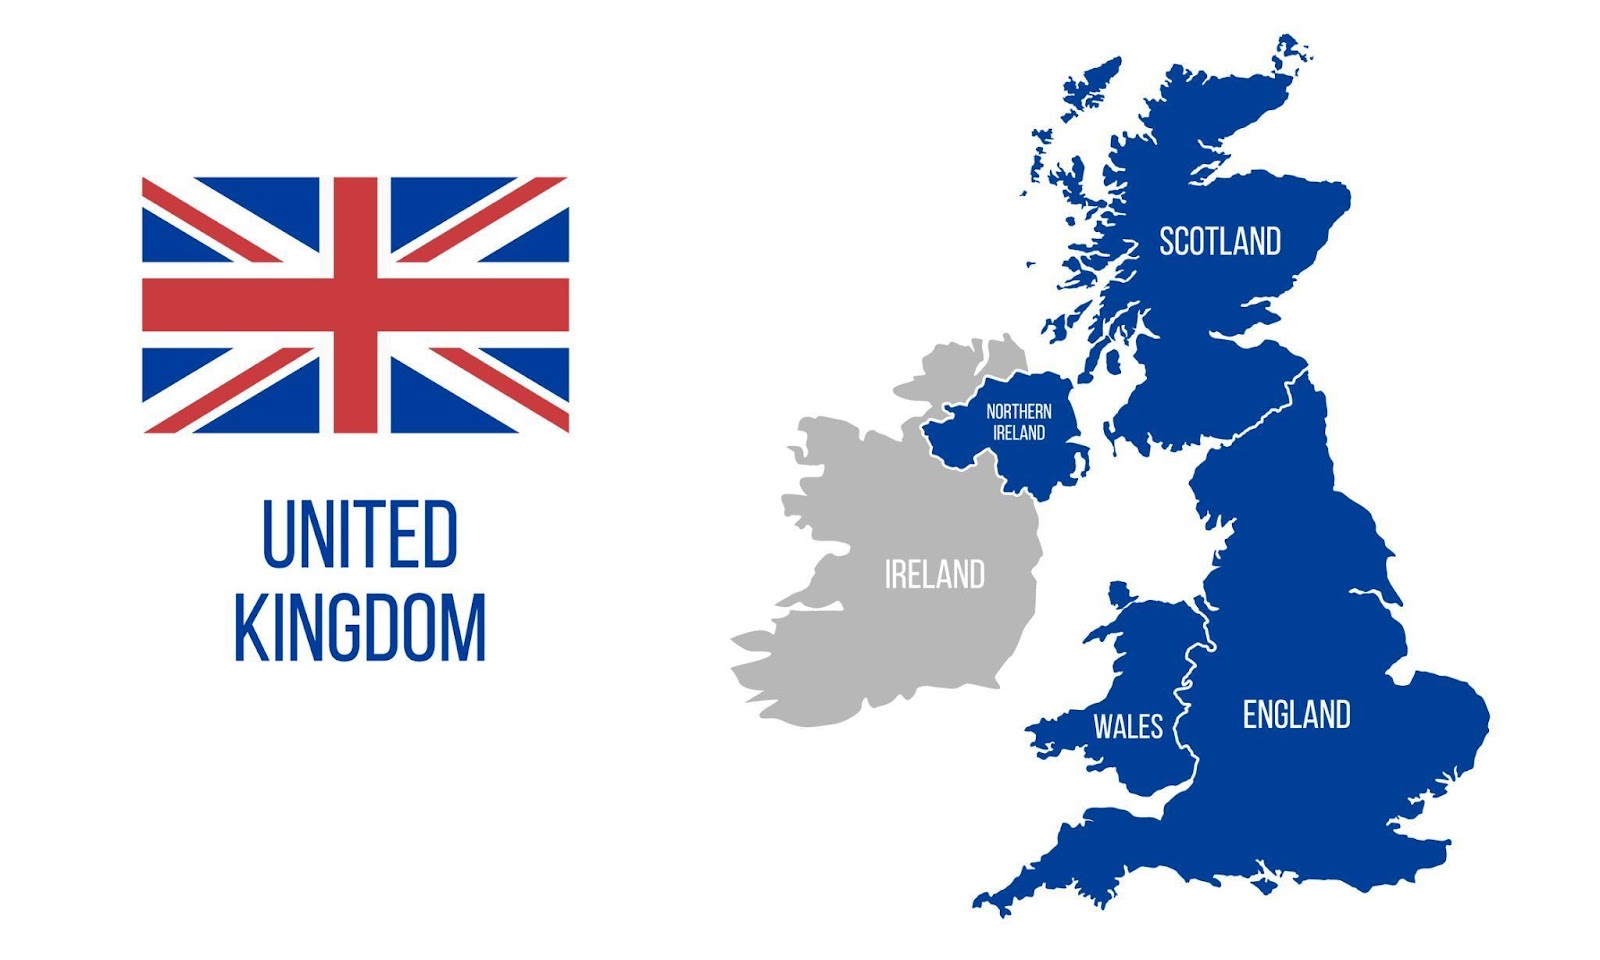 Perhatikan bahwa Britania Raya (UK) dan Britania Raya, meskipun sangat mirip, tidak identik dalam konteks legislatif ini